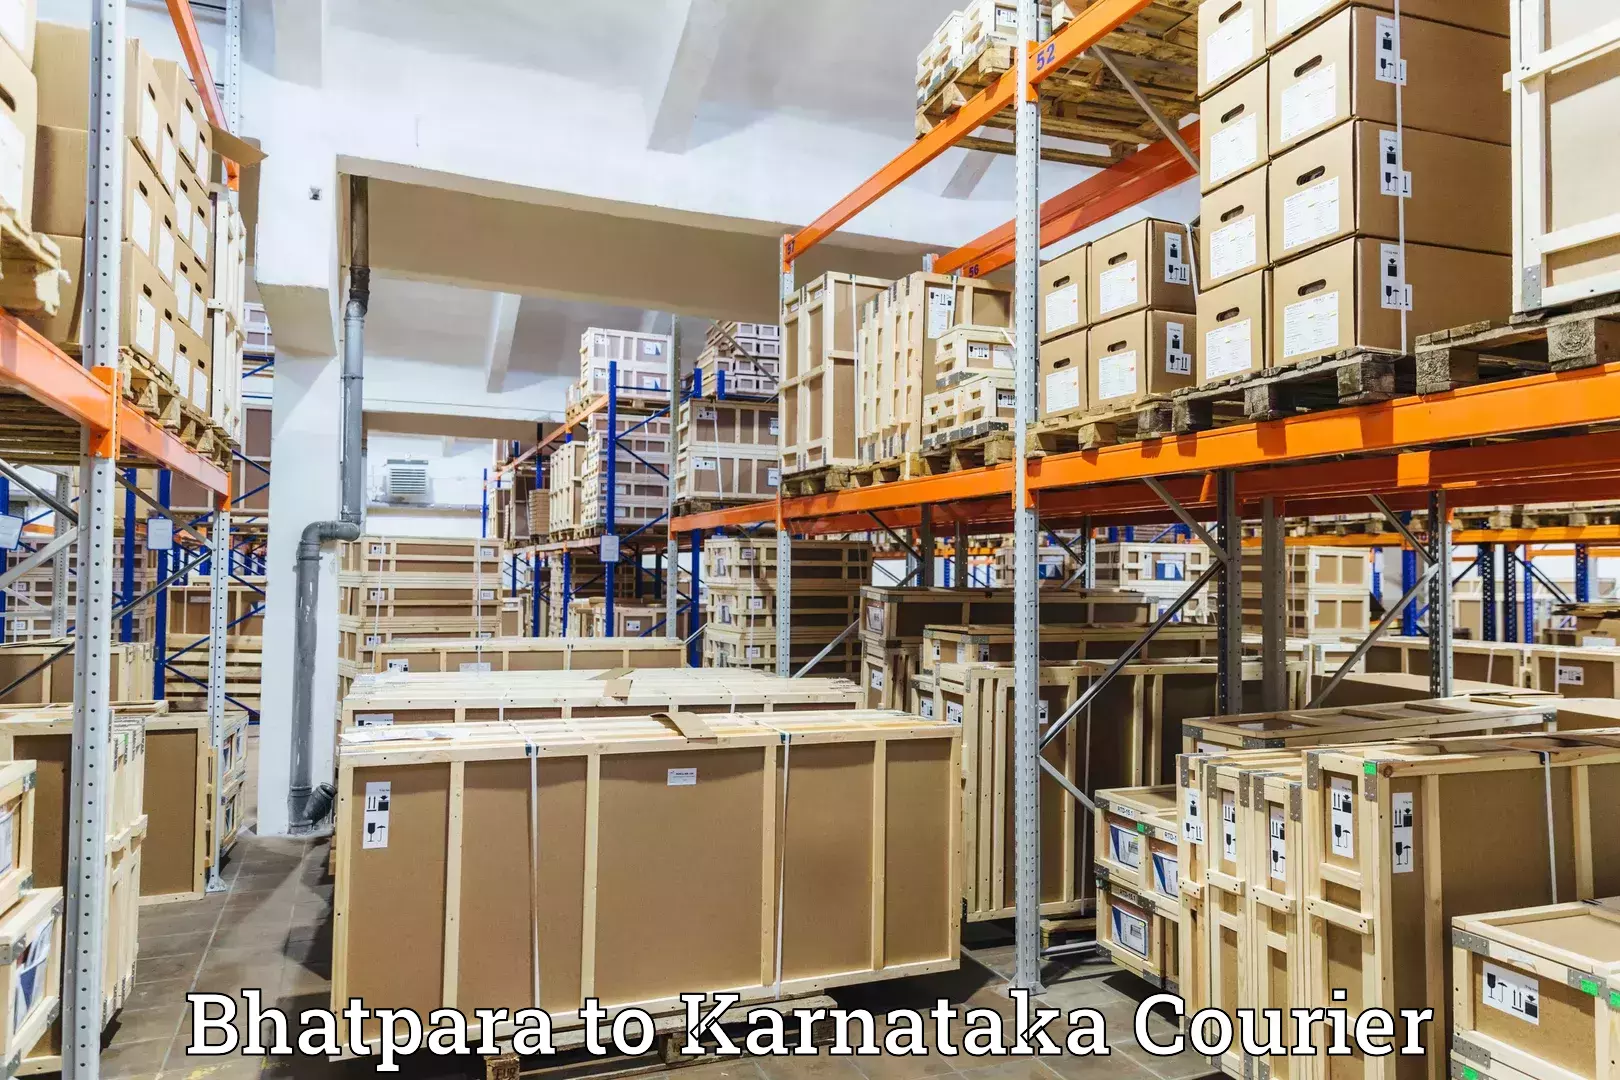 Premium courier solutions Bhatpara to Karnataka